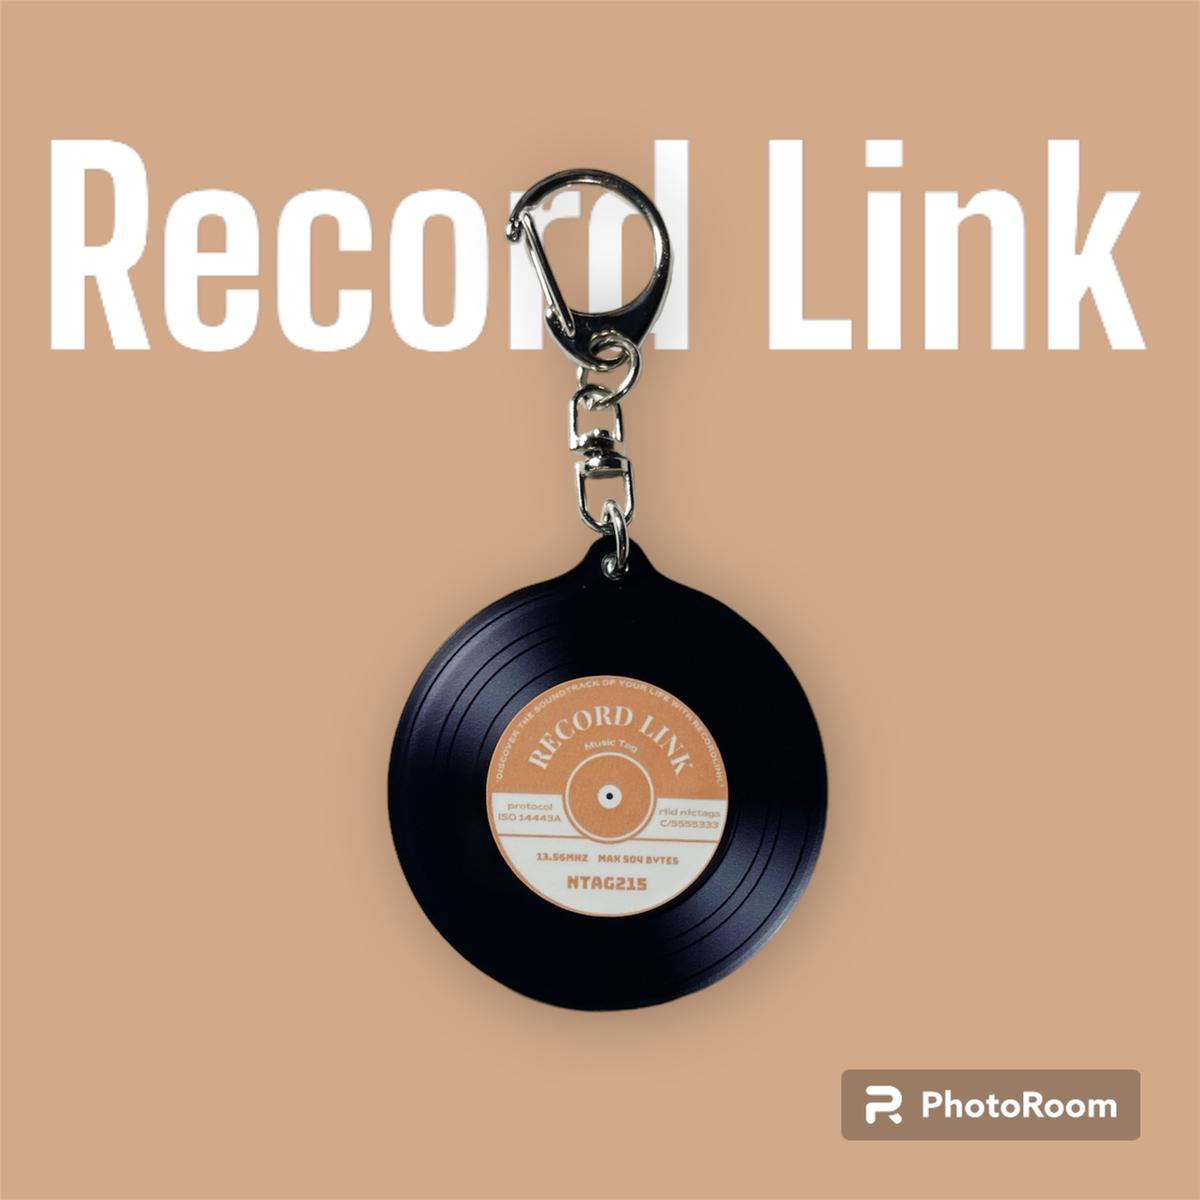 RecordLink